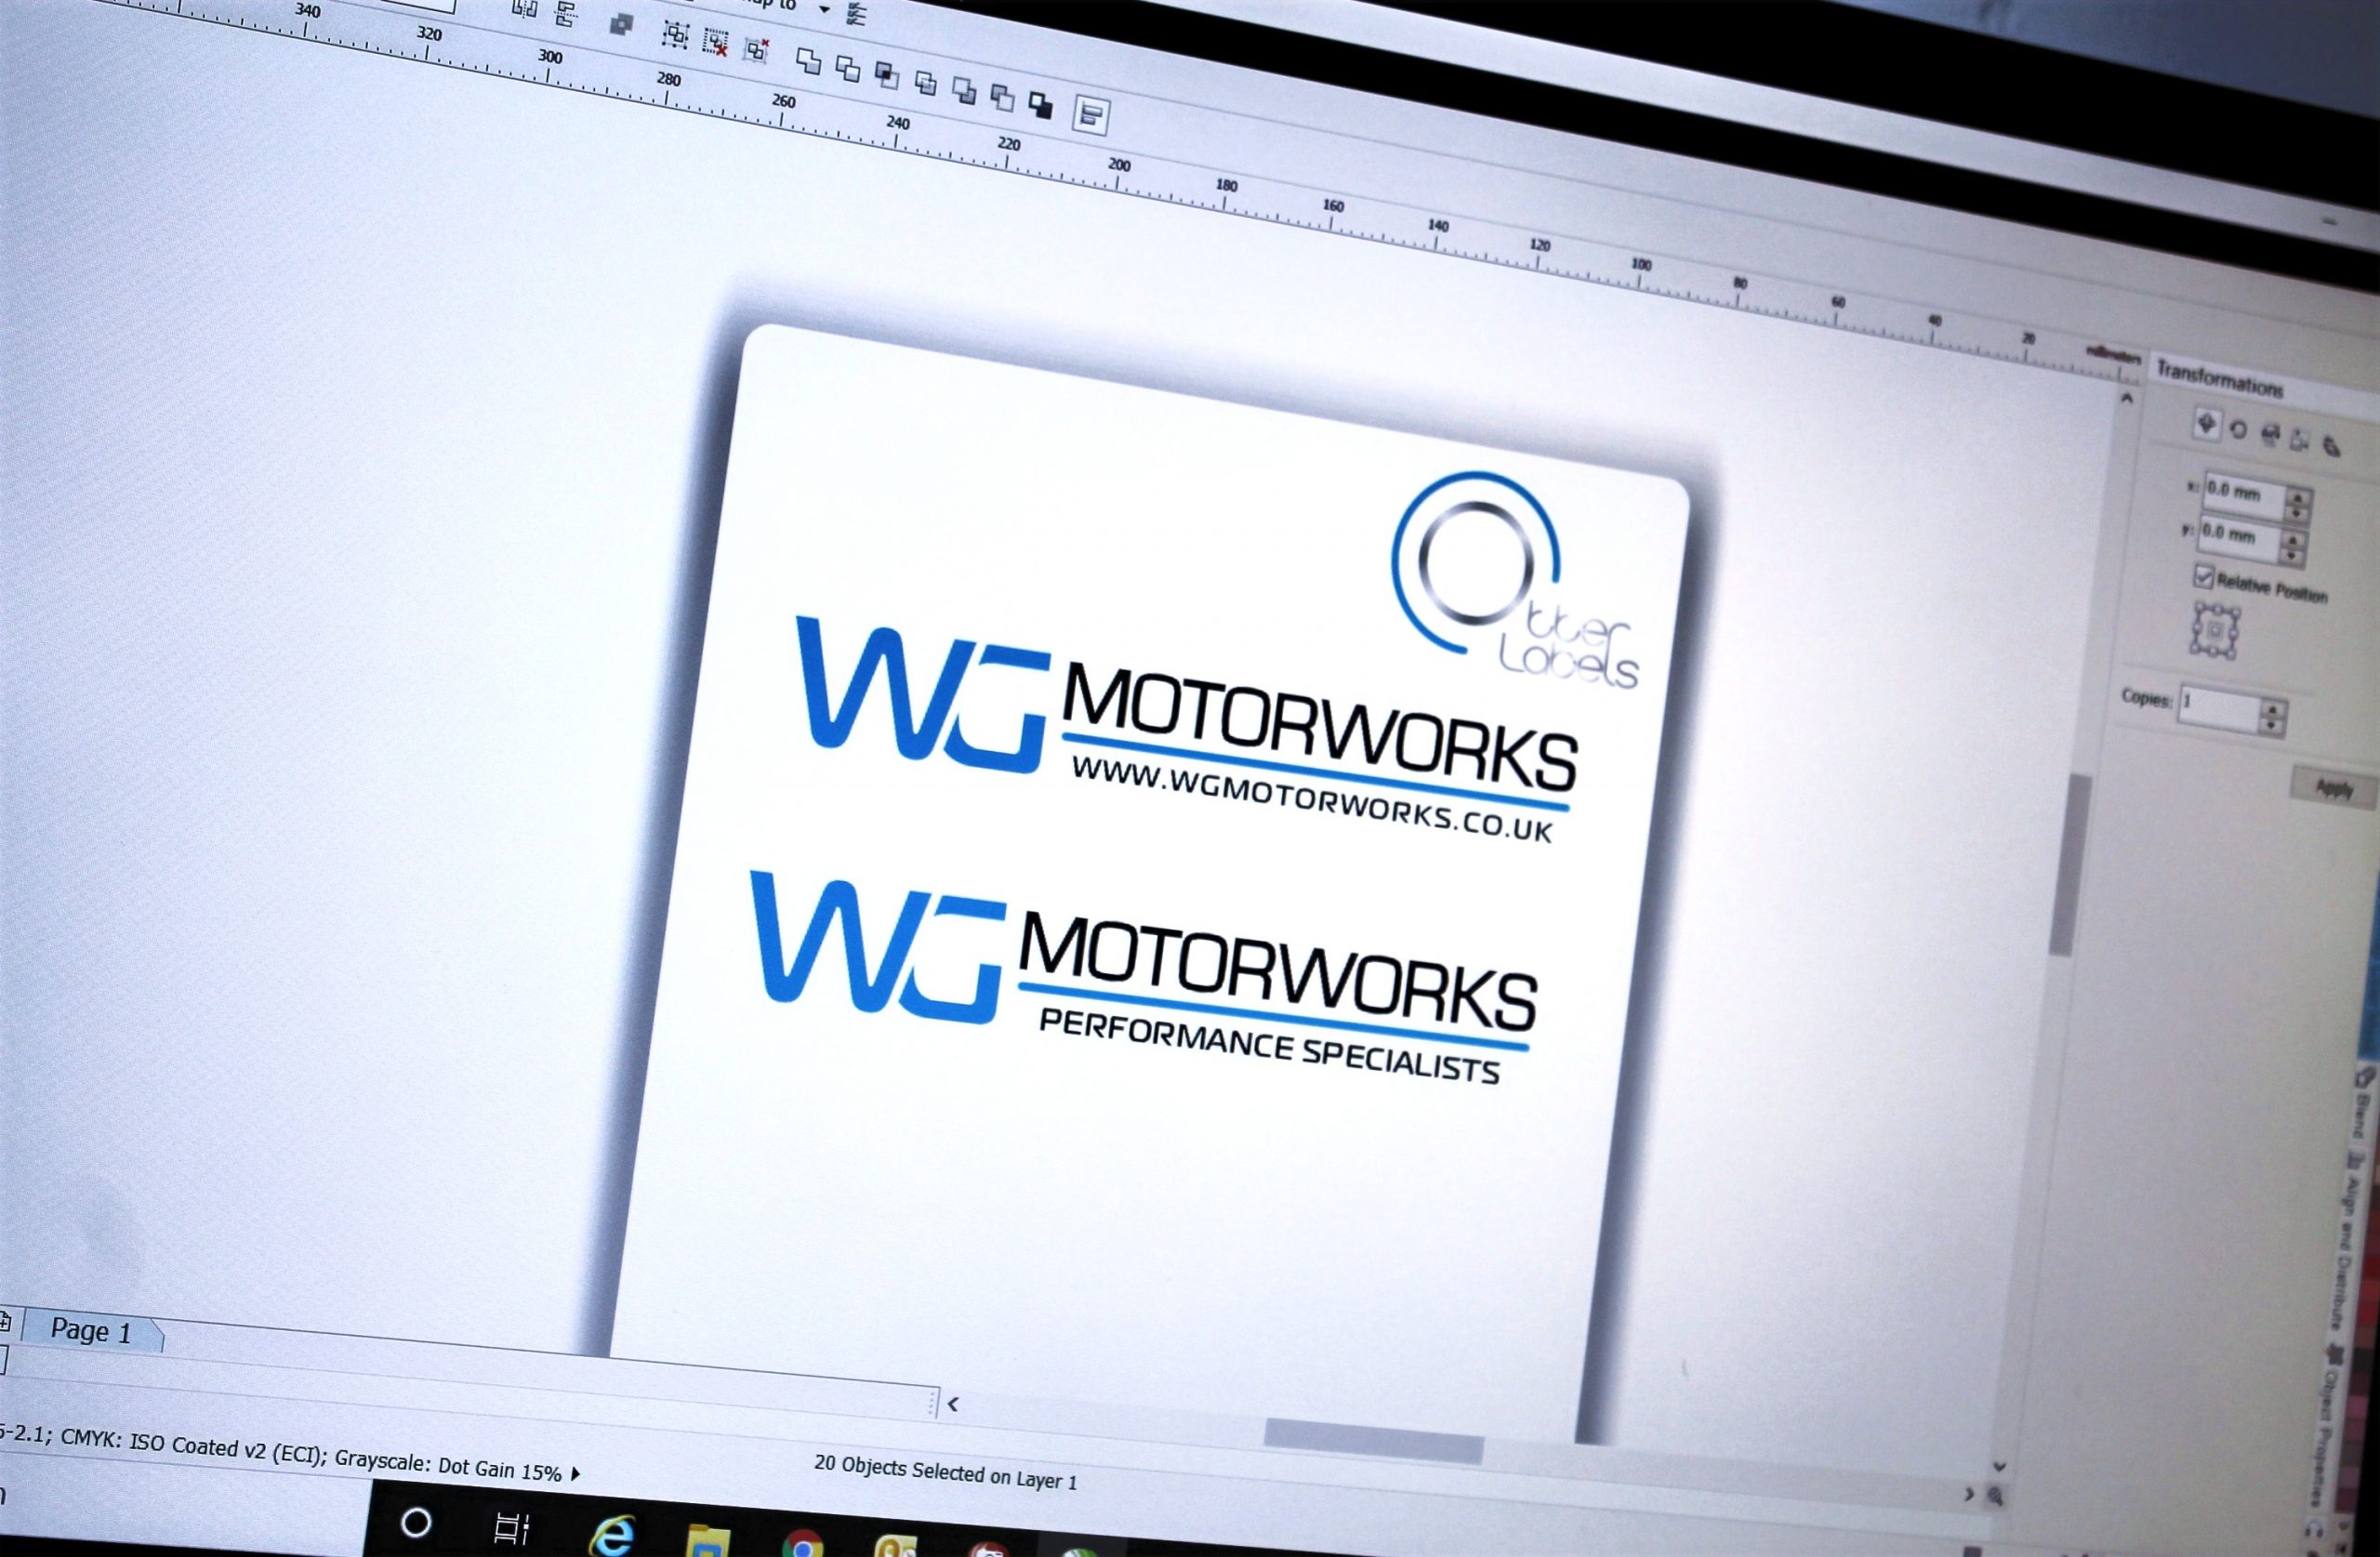 WG Motorworks